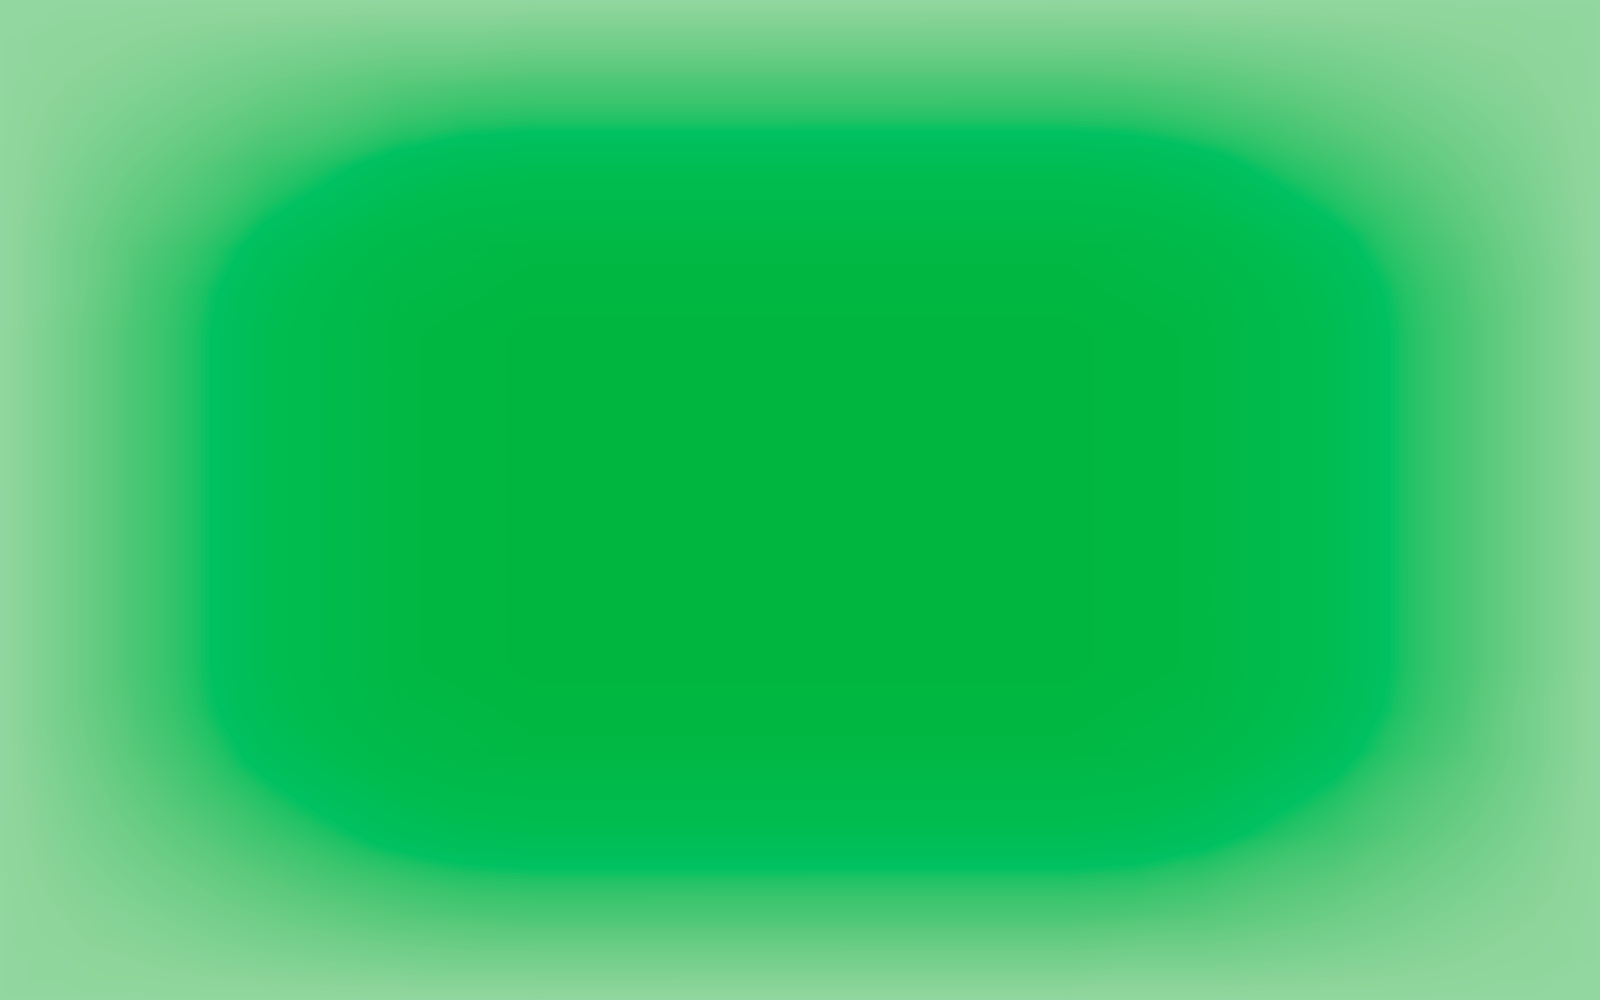 Abstracte groene vage achtergrond met verloopnet vector eps 10